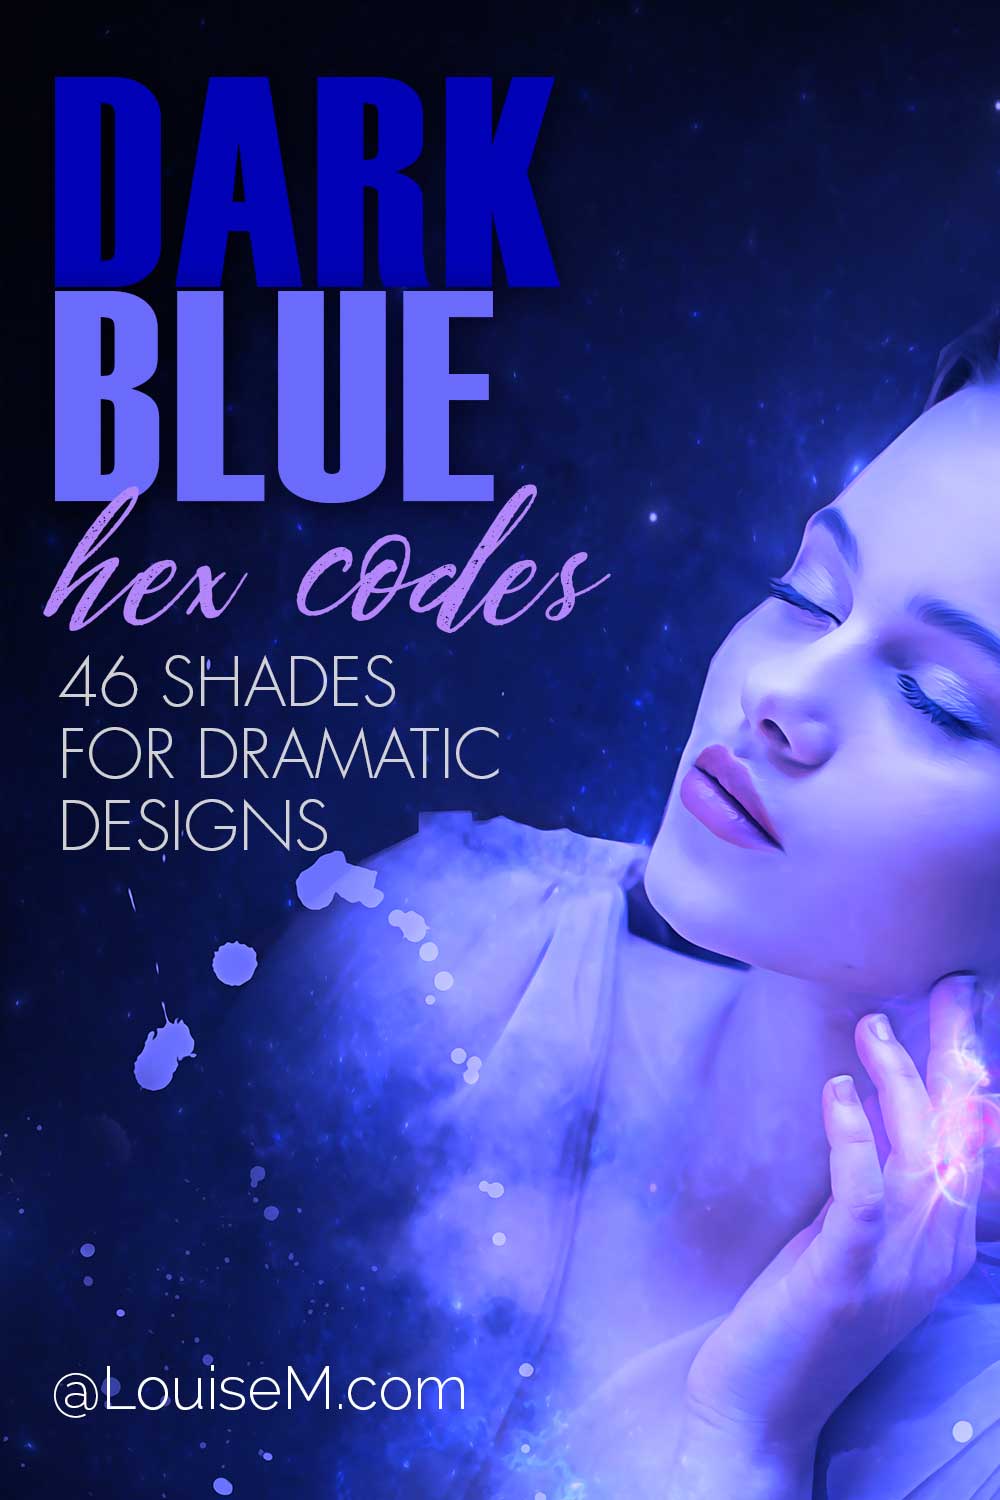 青い光の中のきれいな女性にはテキストがあり、劇的なデザインの濃い青の 16 進コードが付いています。